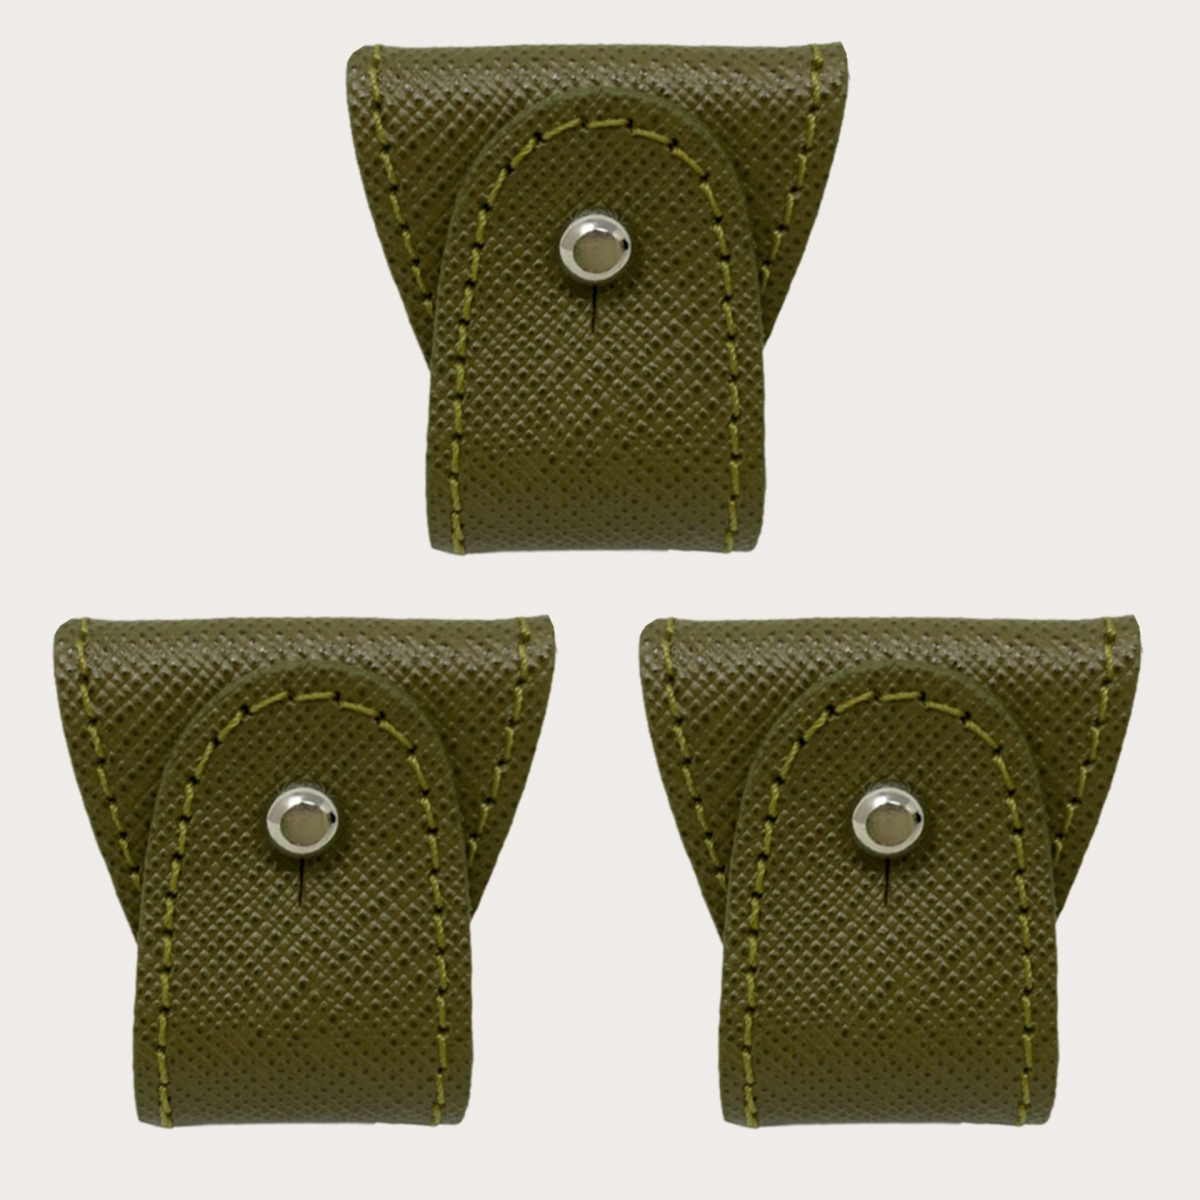 BRUCLE Jeu d'embouts de rechange en cuir pour bretelles à double usage, 3 pièces, saffiano vert militaire